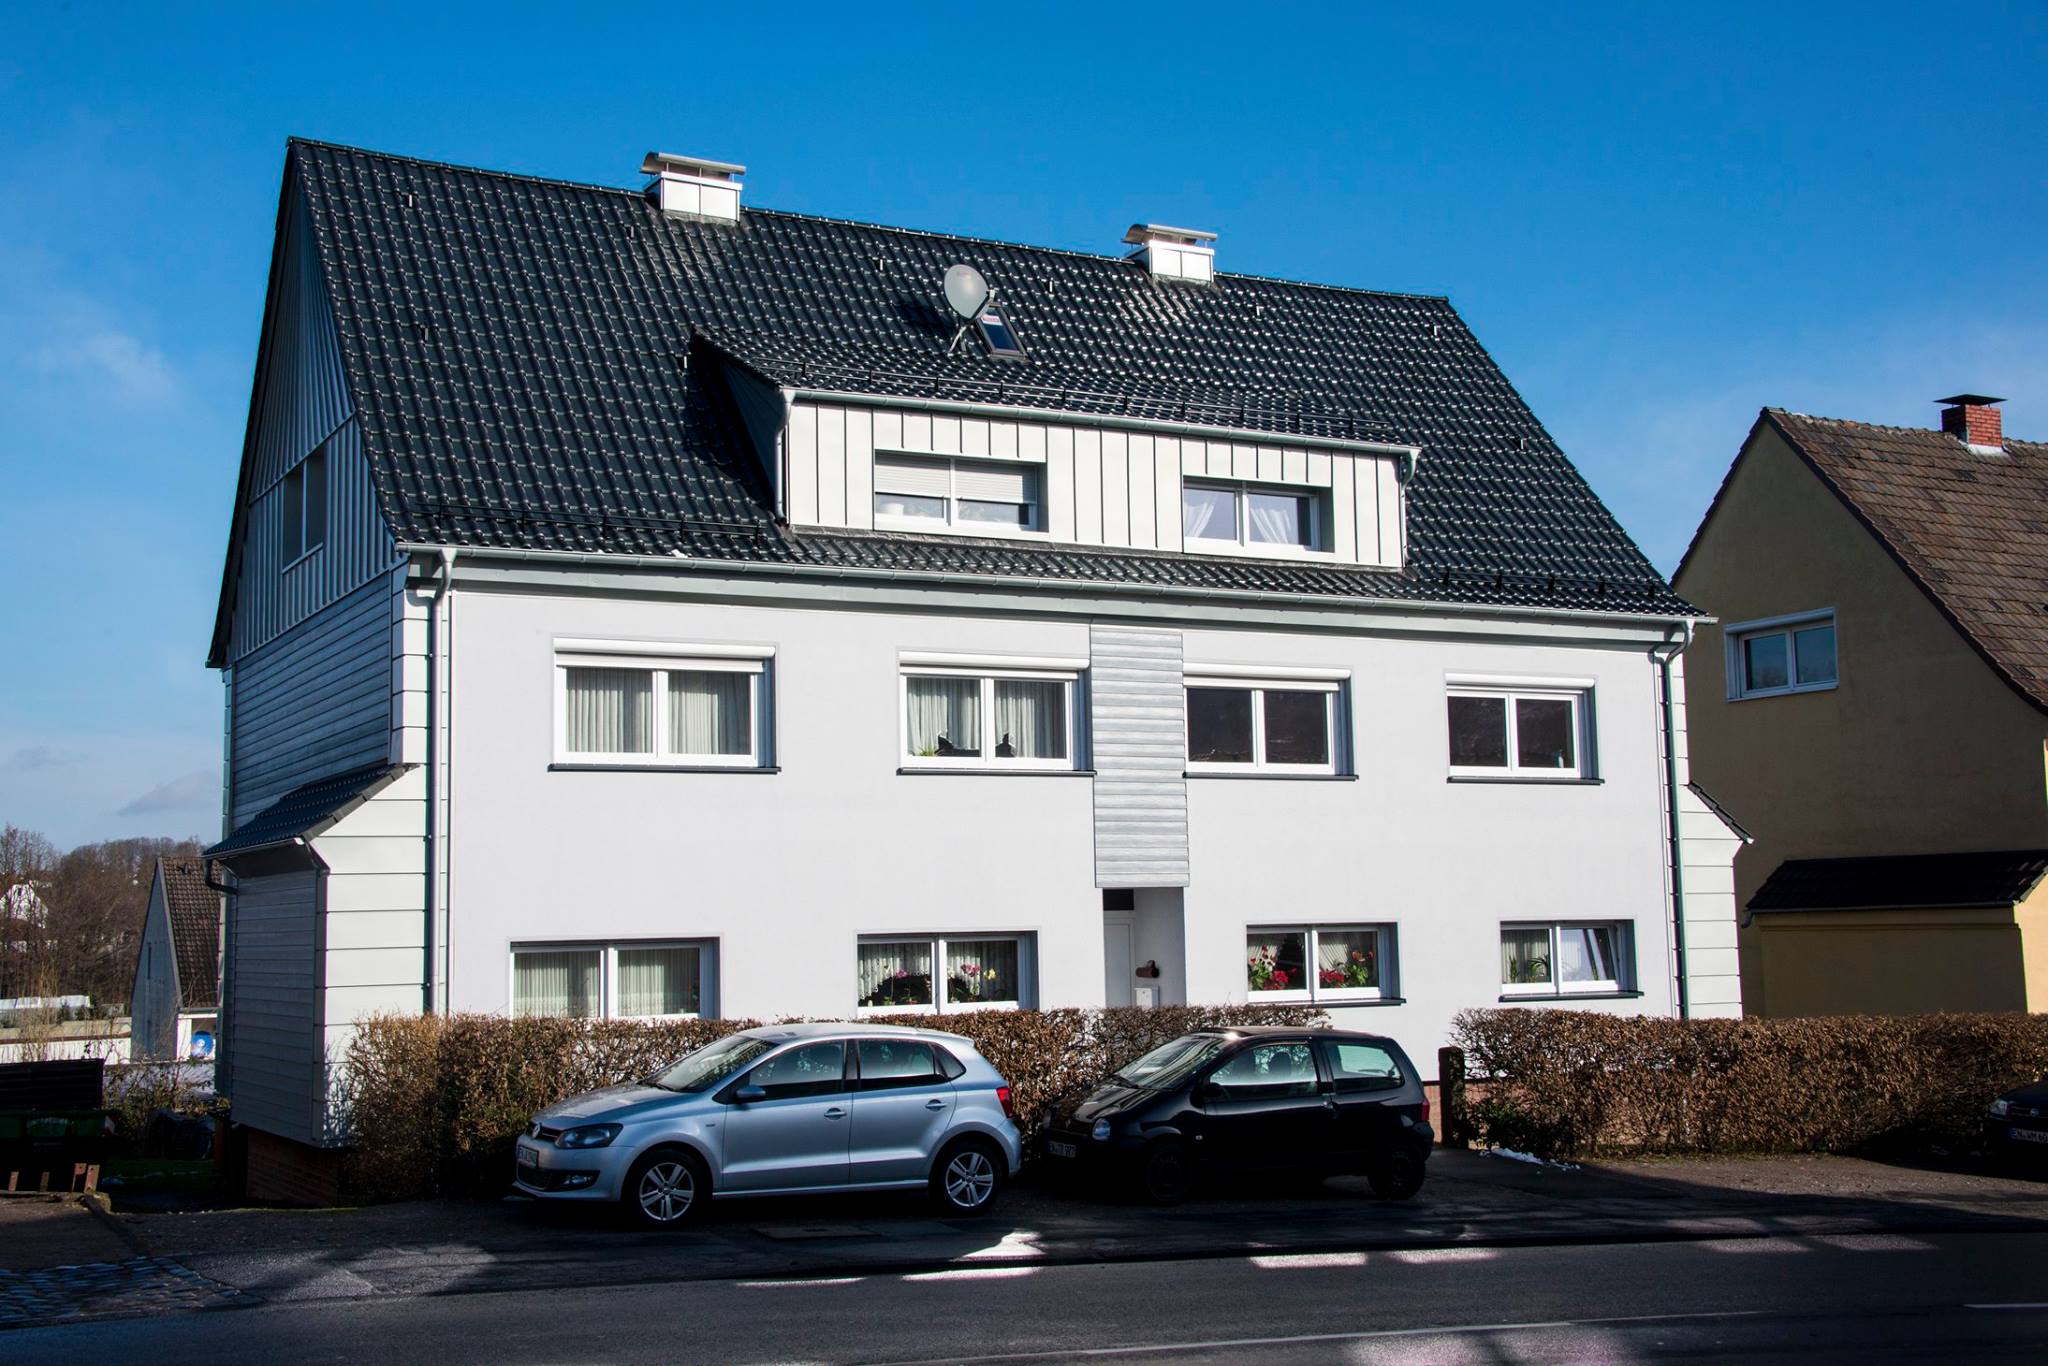 Referenzen von Scherwat: Mehrfamilienhaus in Gevelsberg (nachher)